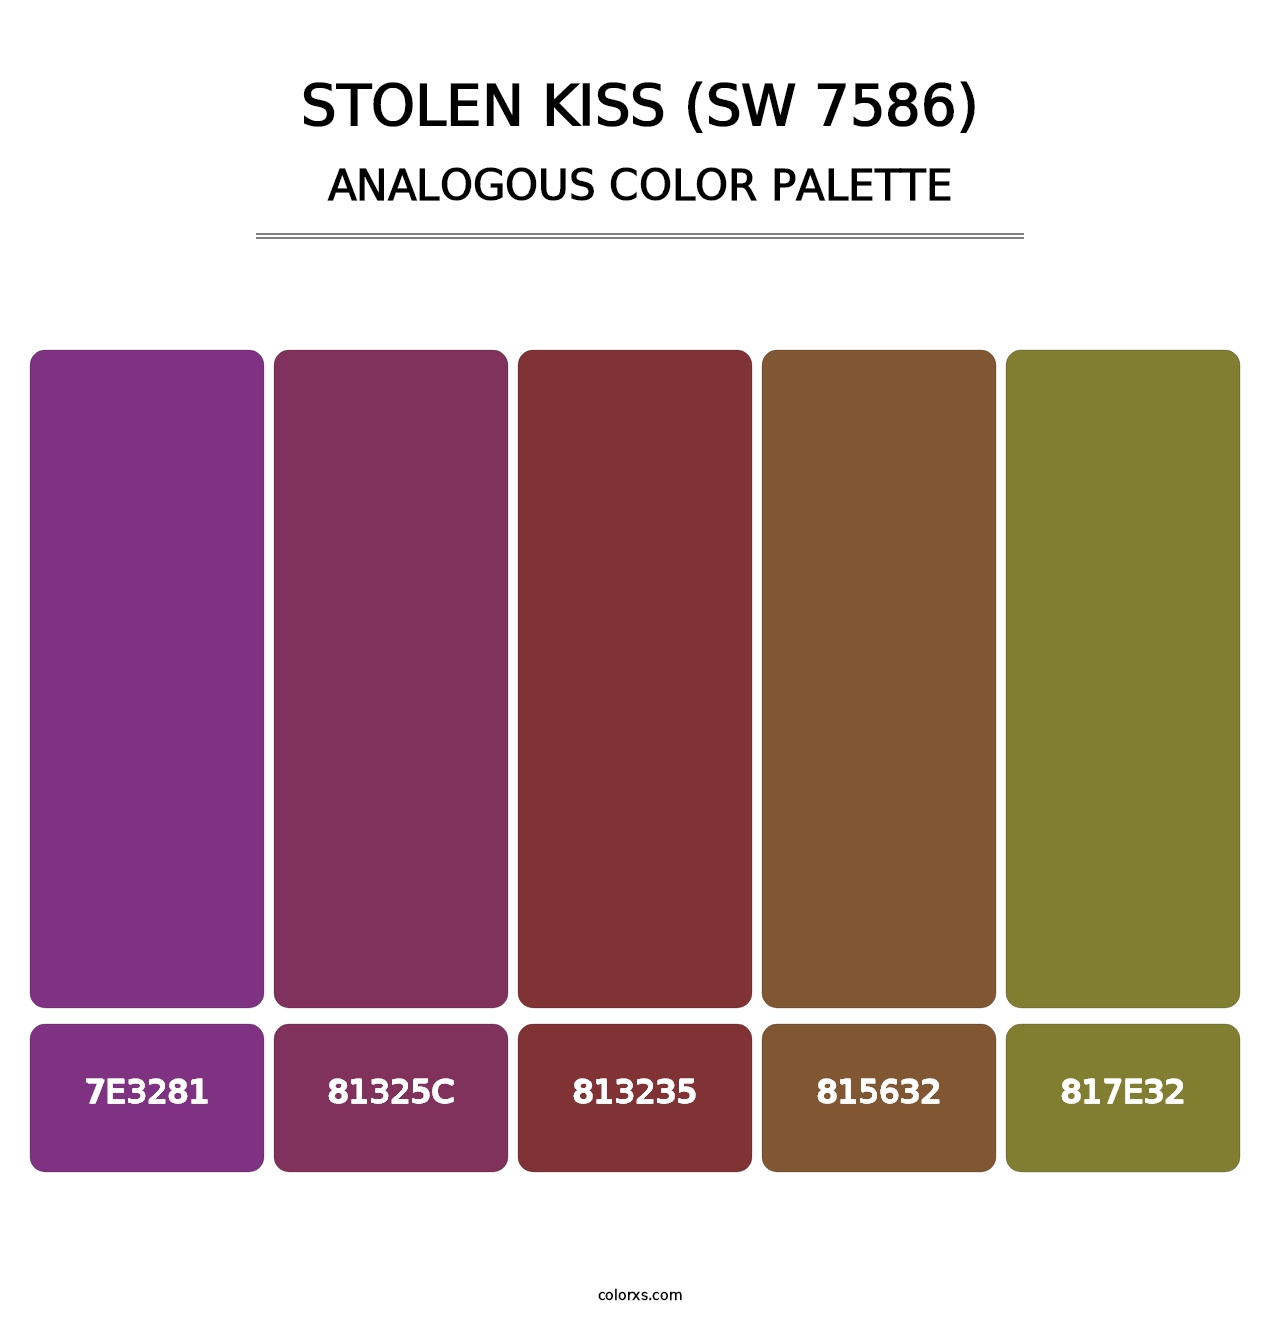 Stolen Kiss (SW 7586) - Analogous Color Palette